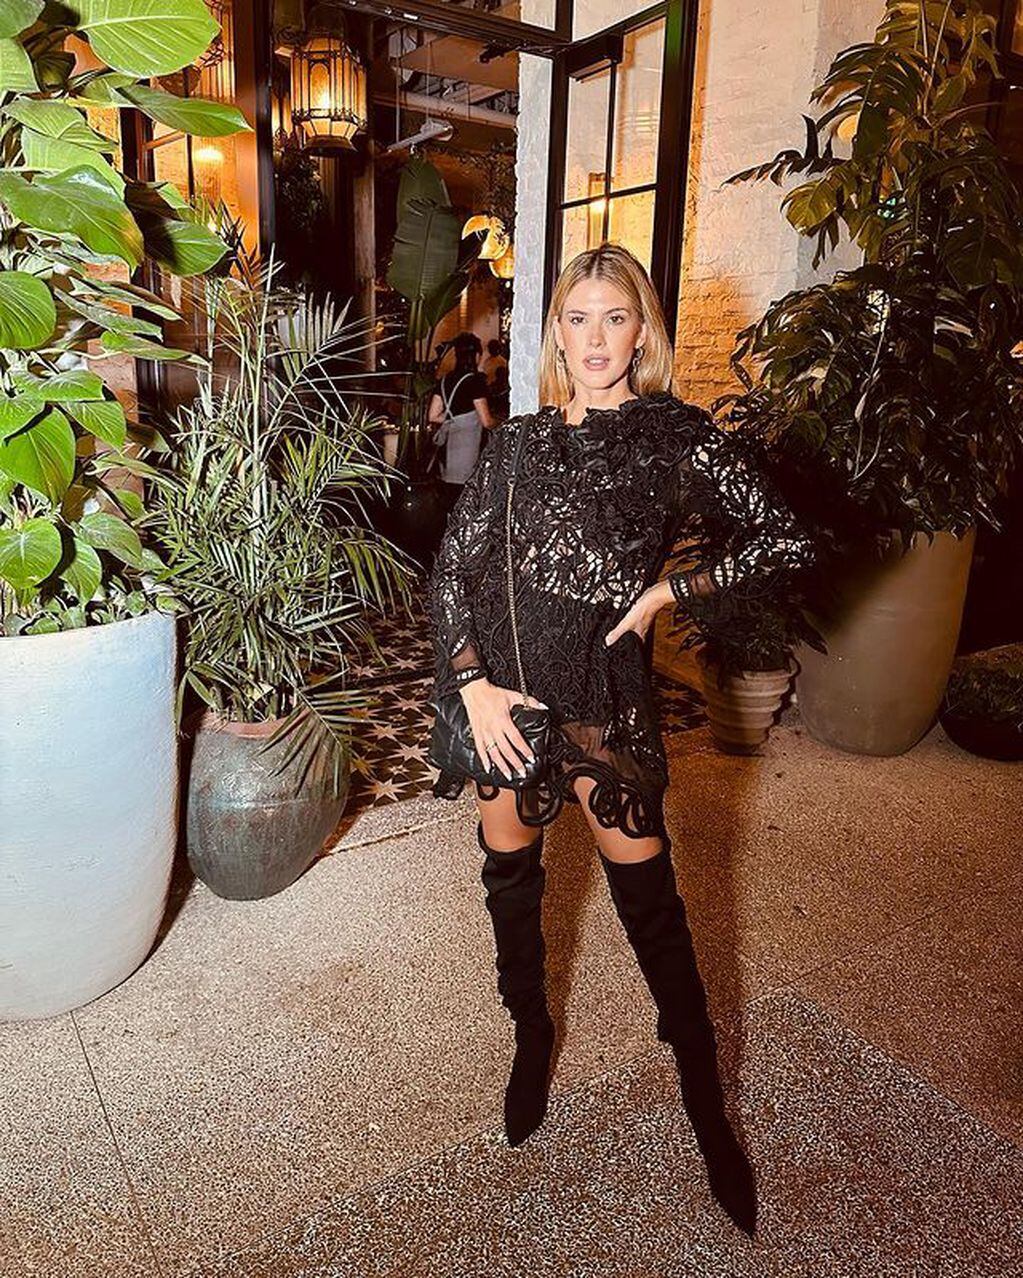 La actriz eligió un vestido transparente negro para disfrutar de una noche en Estados Unidos con el que sorprendió a sus fanáticos. / Foto: Instagram